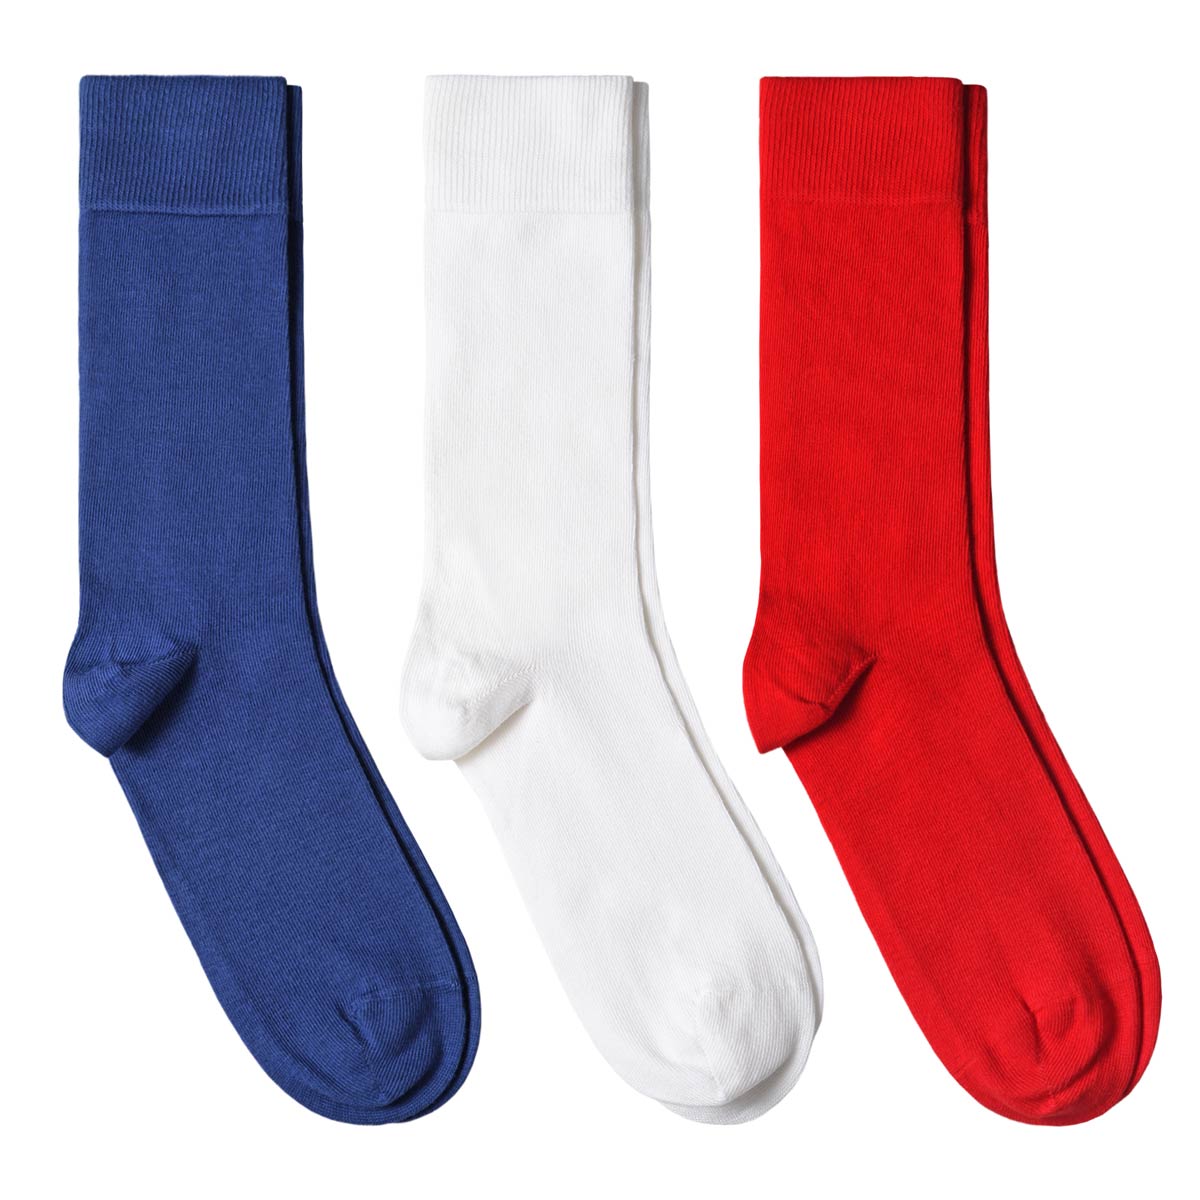 CH-00712_A12-1--_Lot-3-paires-de-chaussettes-homme-bleu-blanc-rouge-unies